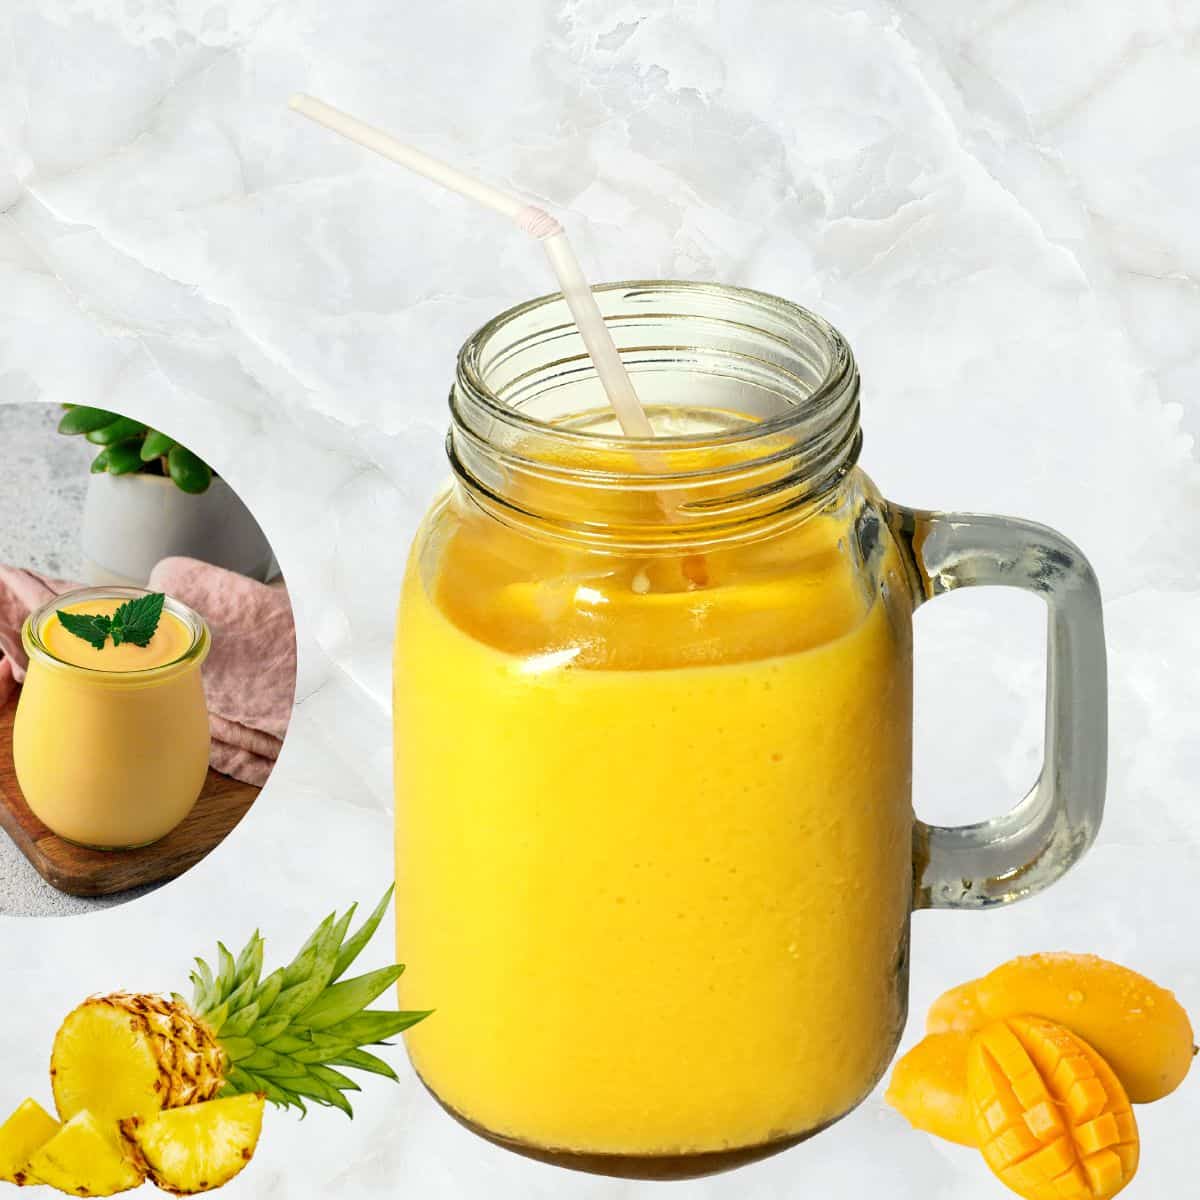 frozen mango smoothie in a jar